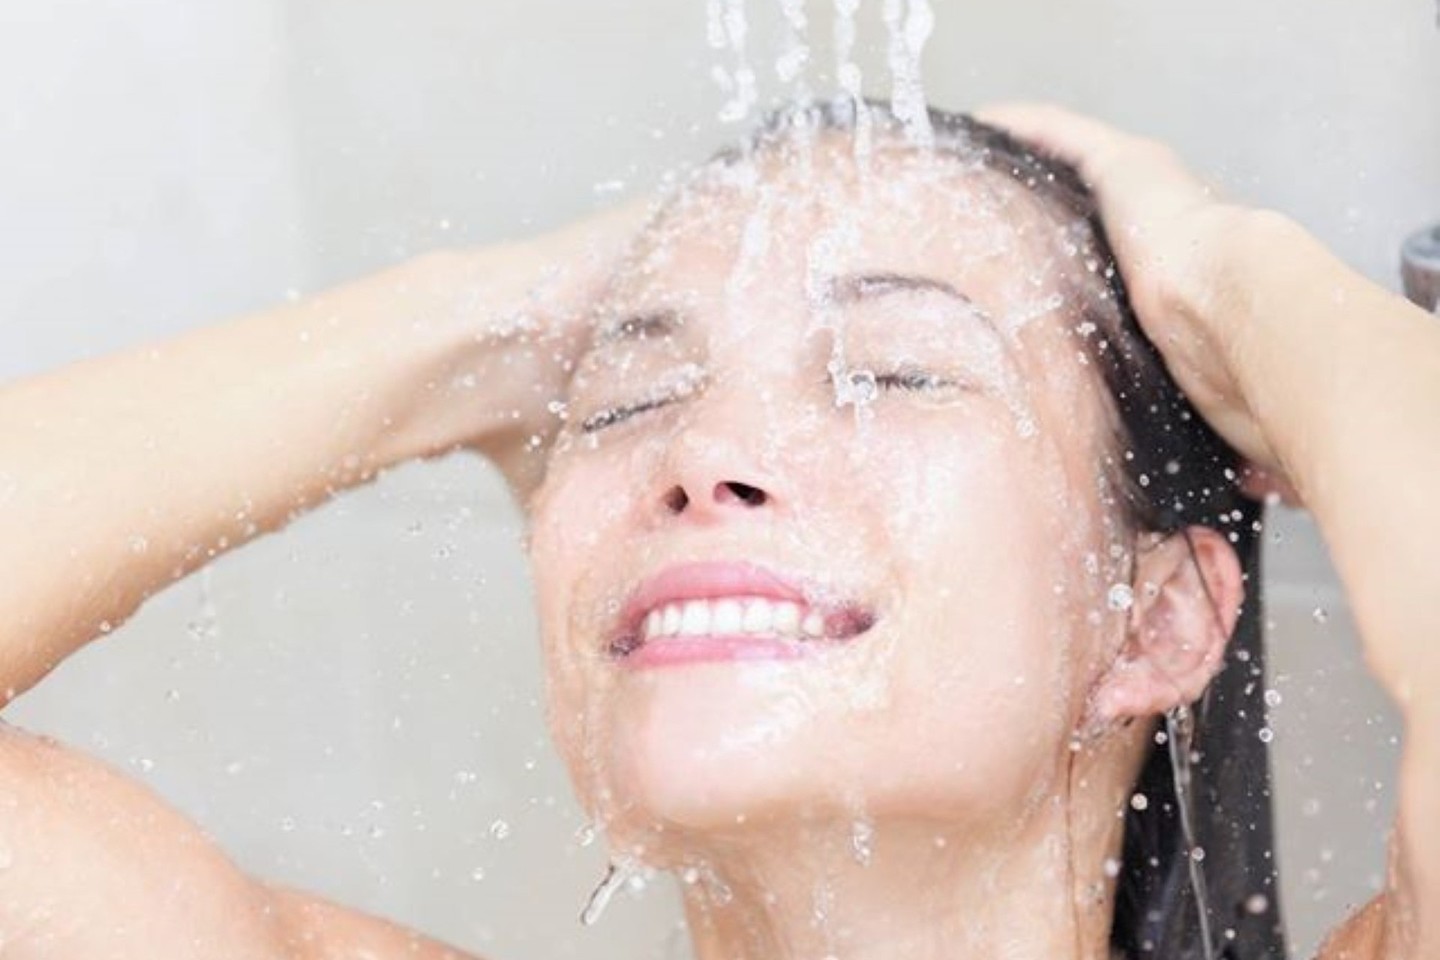 Šlapi plaukai yra daug labiau pažeidžiami nei sausi, todėl su jais reikėtų elgtis ypač atsargiai.